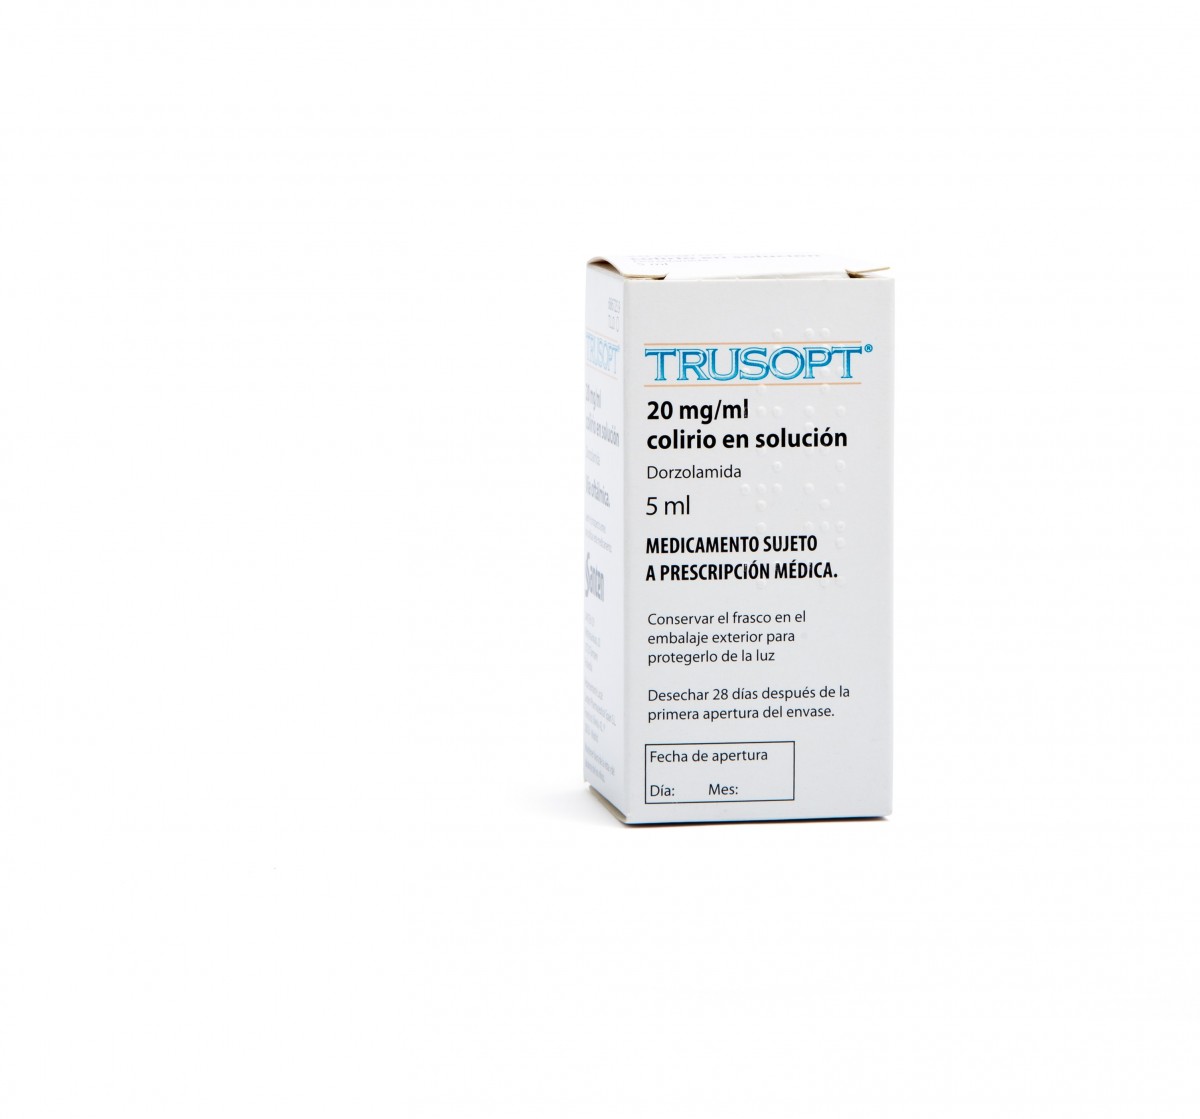 TRUSOPT  20 mg/ml COLIRIO EN SOLUCION , 1 frasco de 5 ml fotografía del envase.